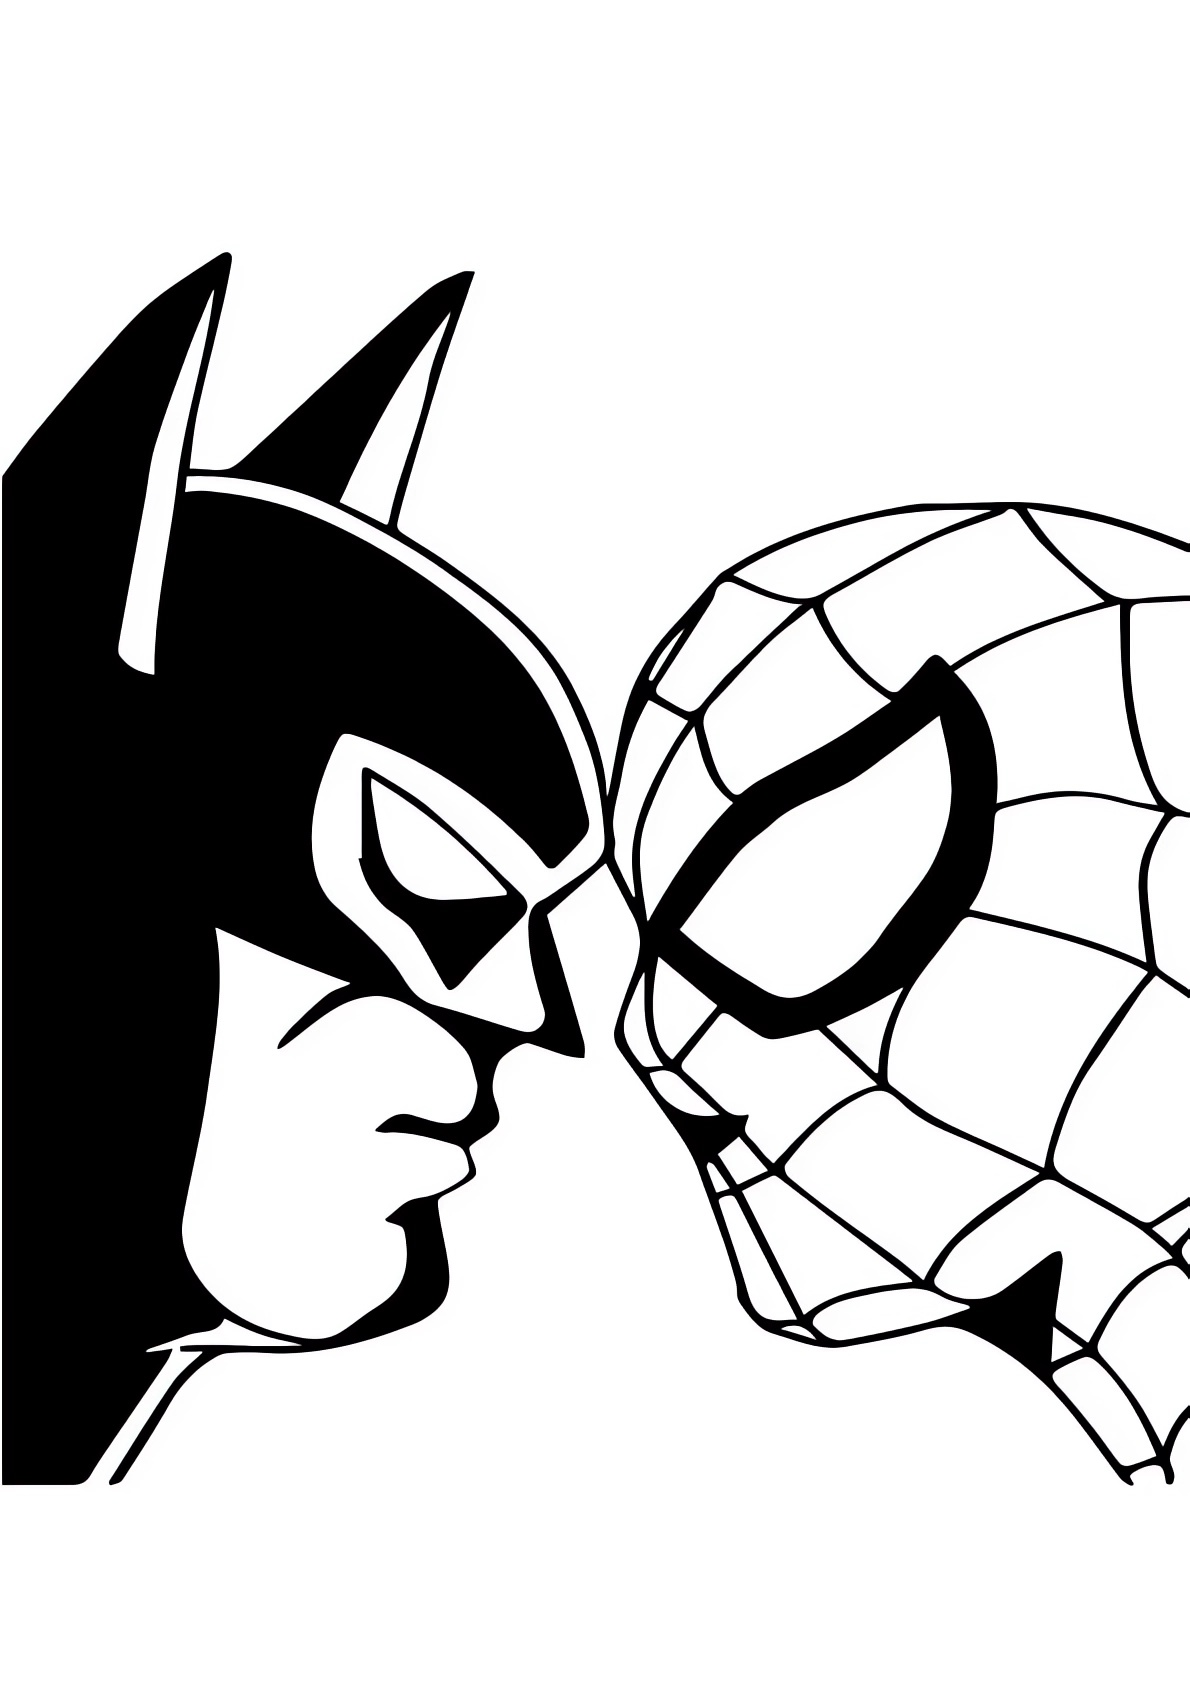 Dibujo de Spiderman vs Batman para imprimir y colorear